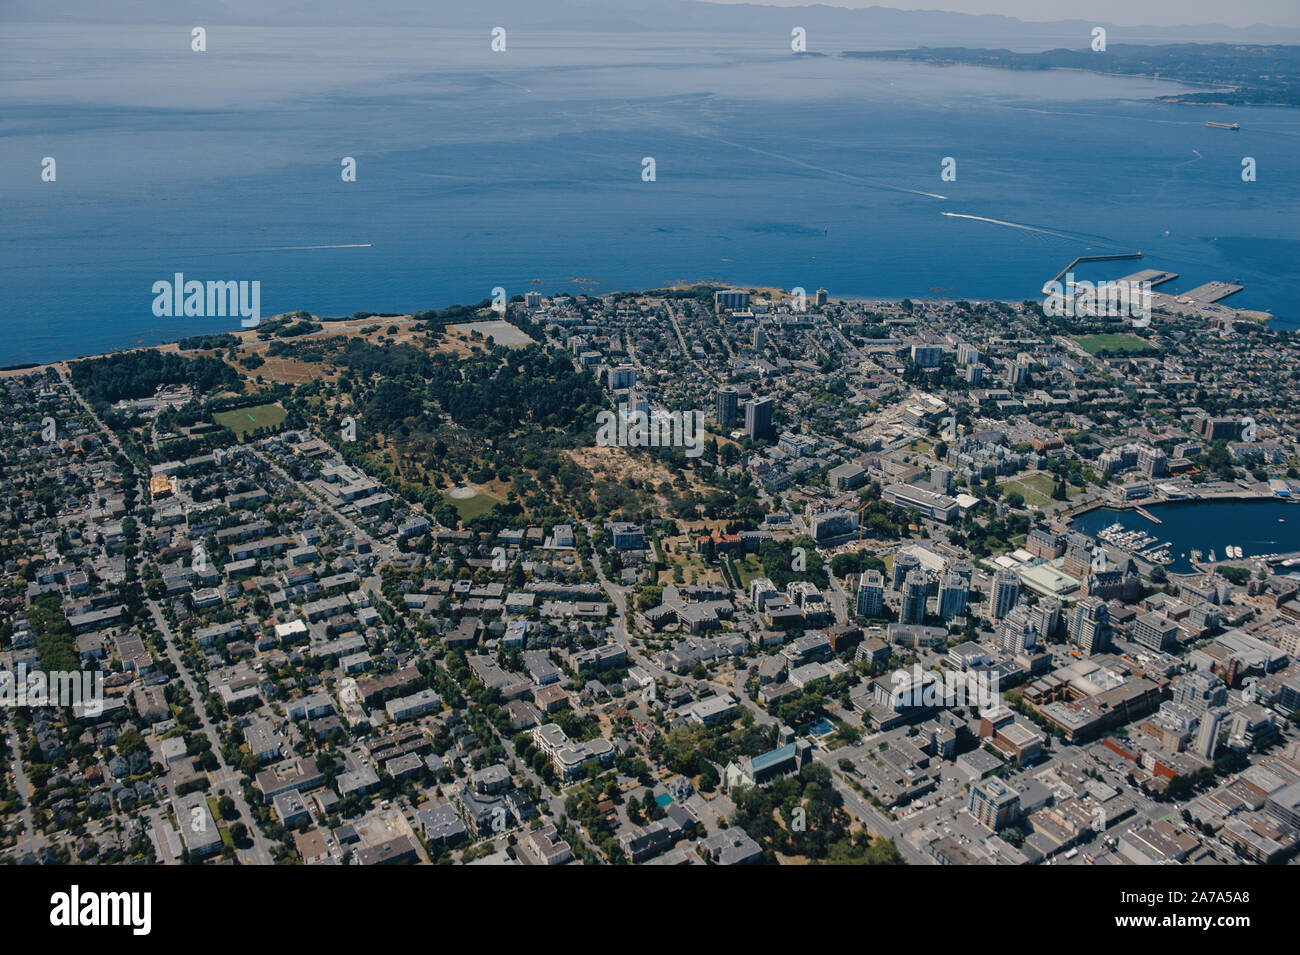 Une vue aérienne du parc Ville de Victoria, Colombie-Britannique, Canada, sur l'île de Vancouver. Banque D'Images